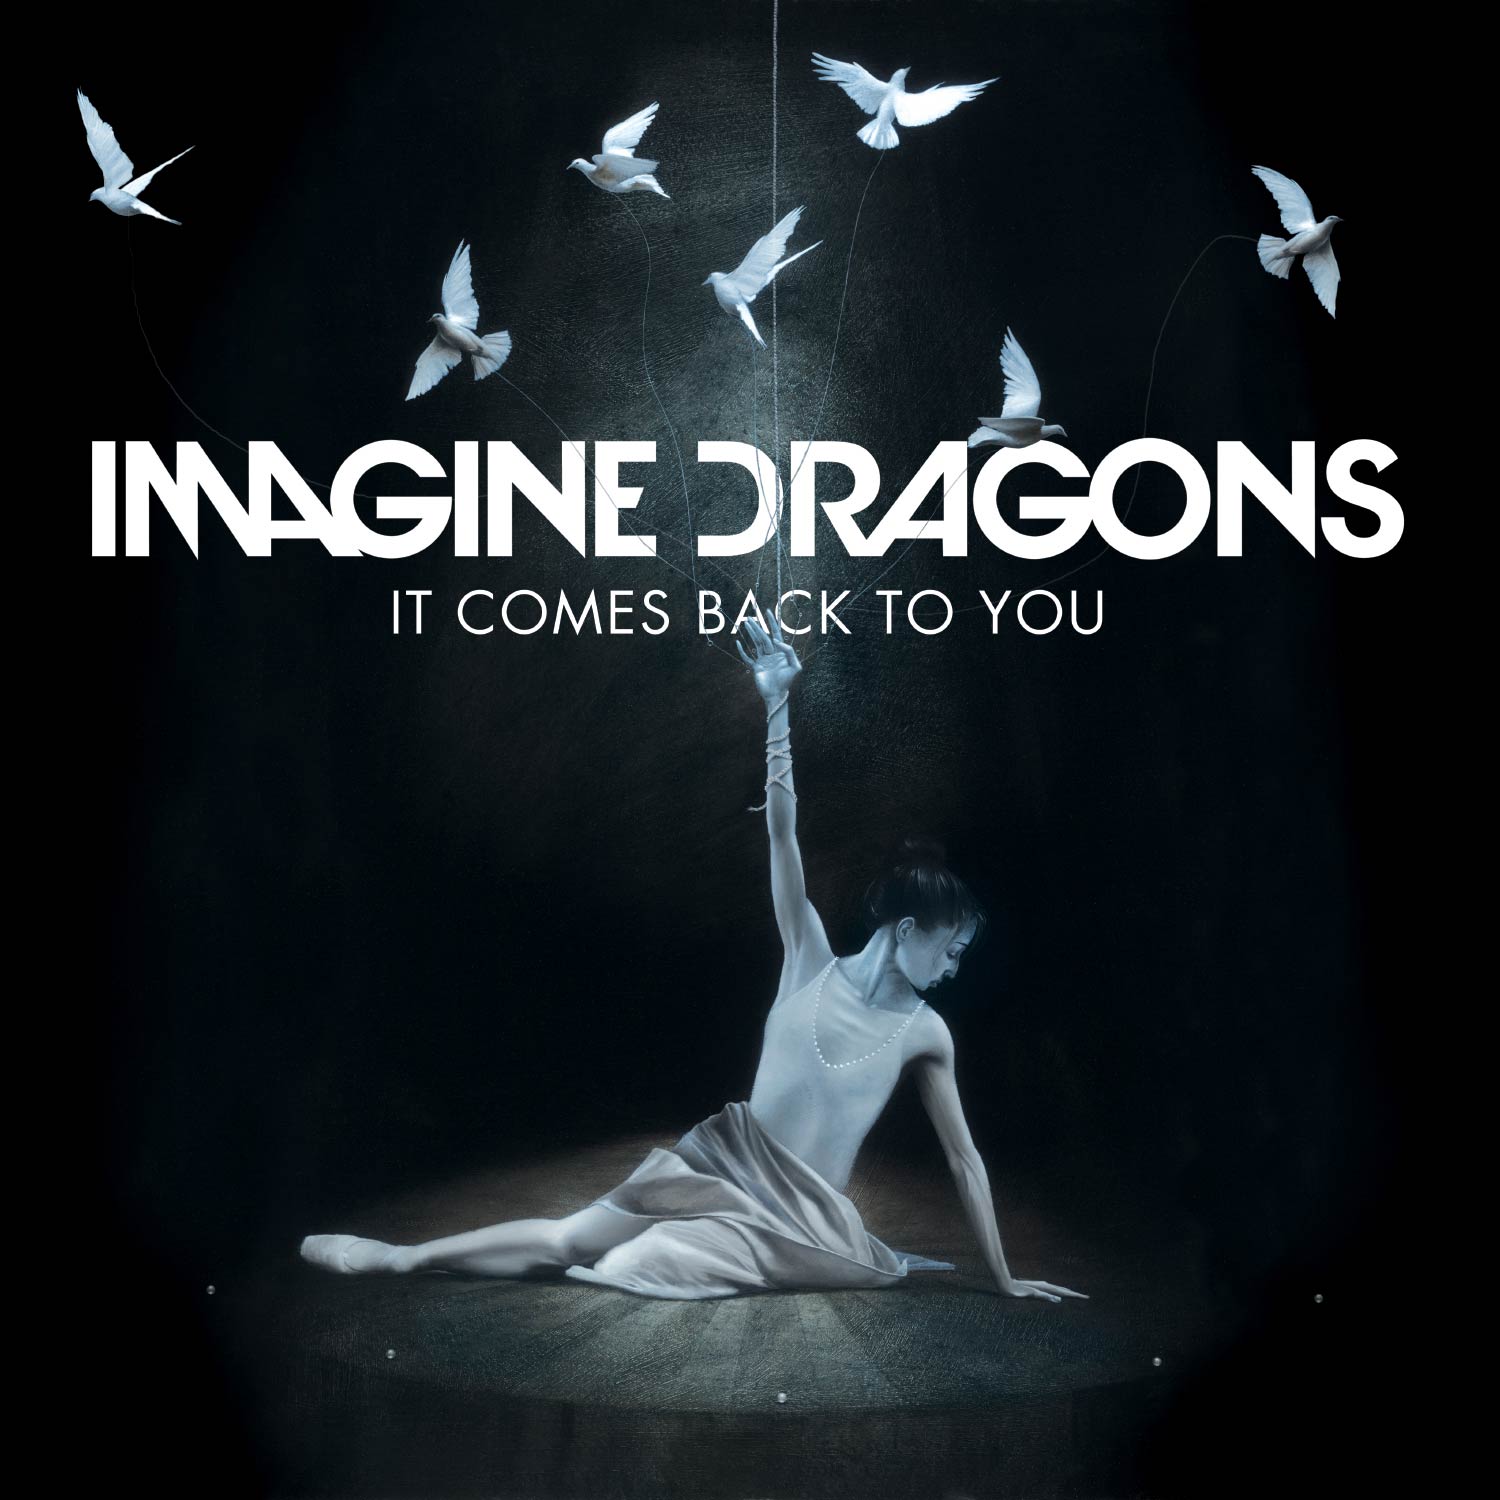 Imagine Dragons: It comes back to you, la portada de la canción